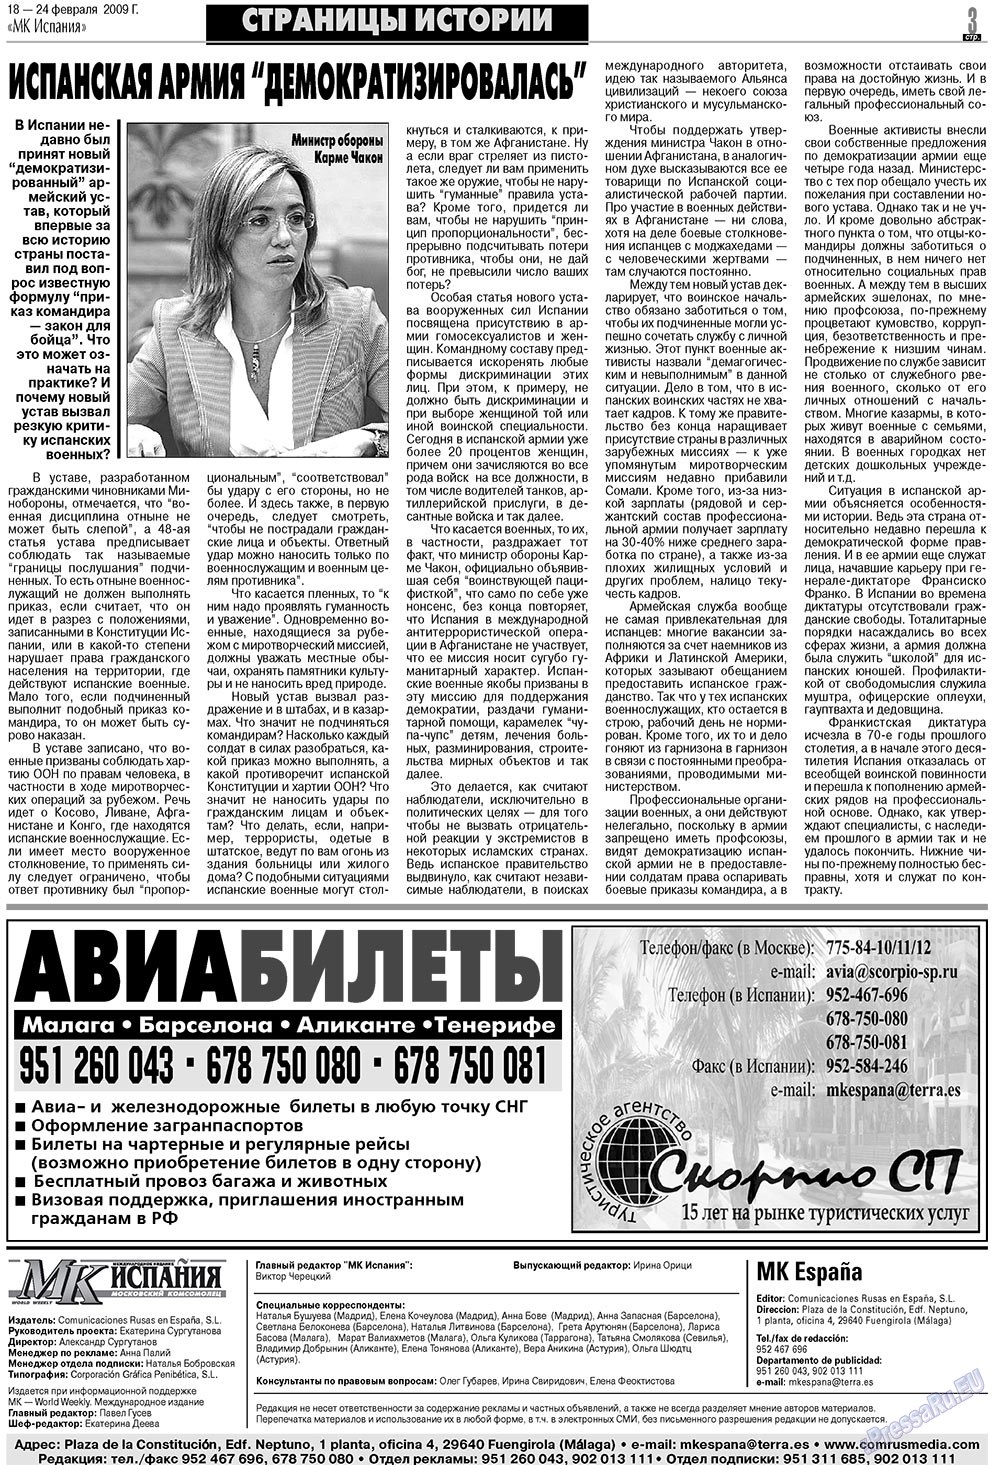 МК Испания, газета. 2009 №8 стр.3